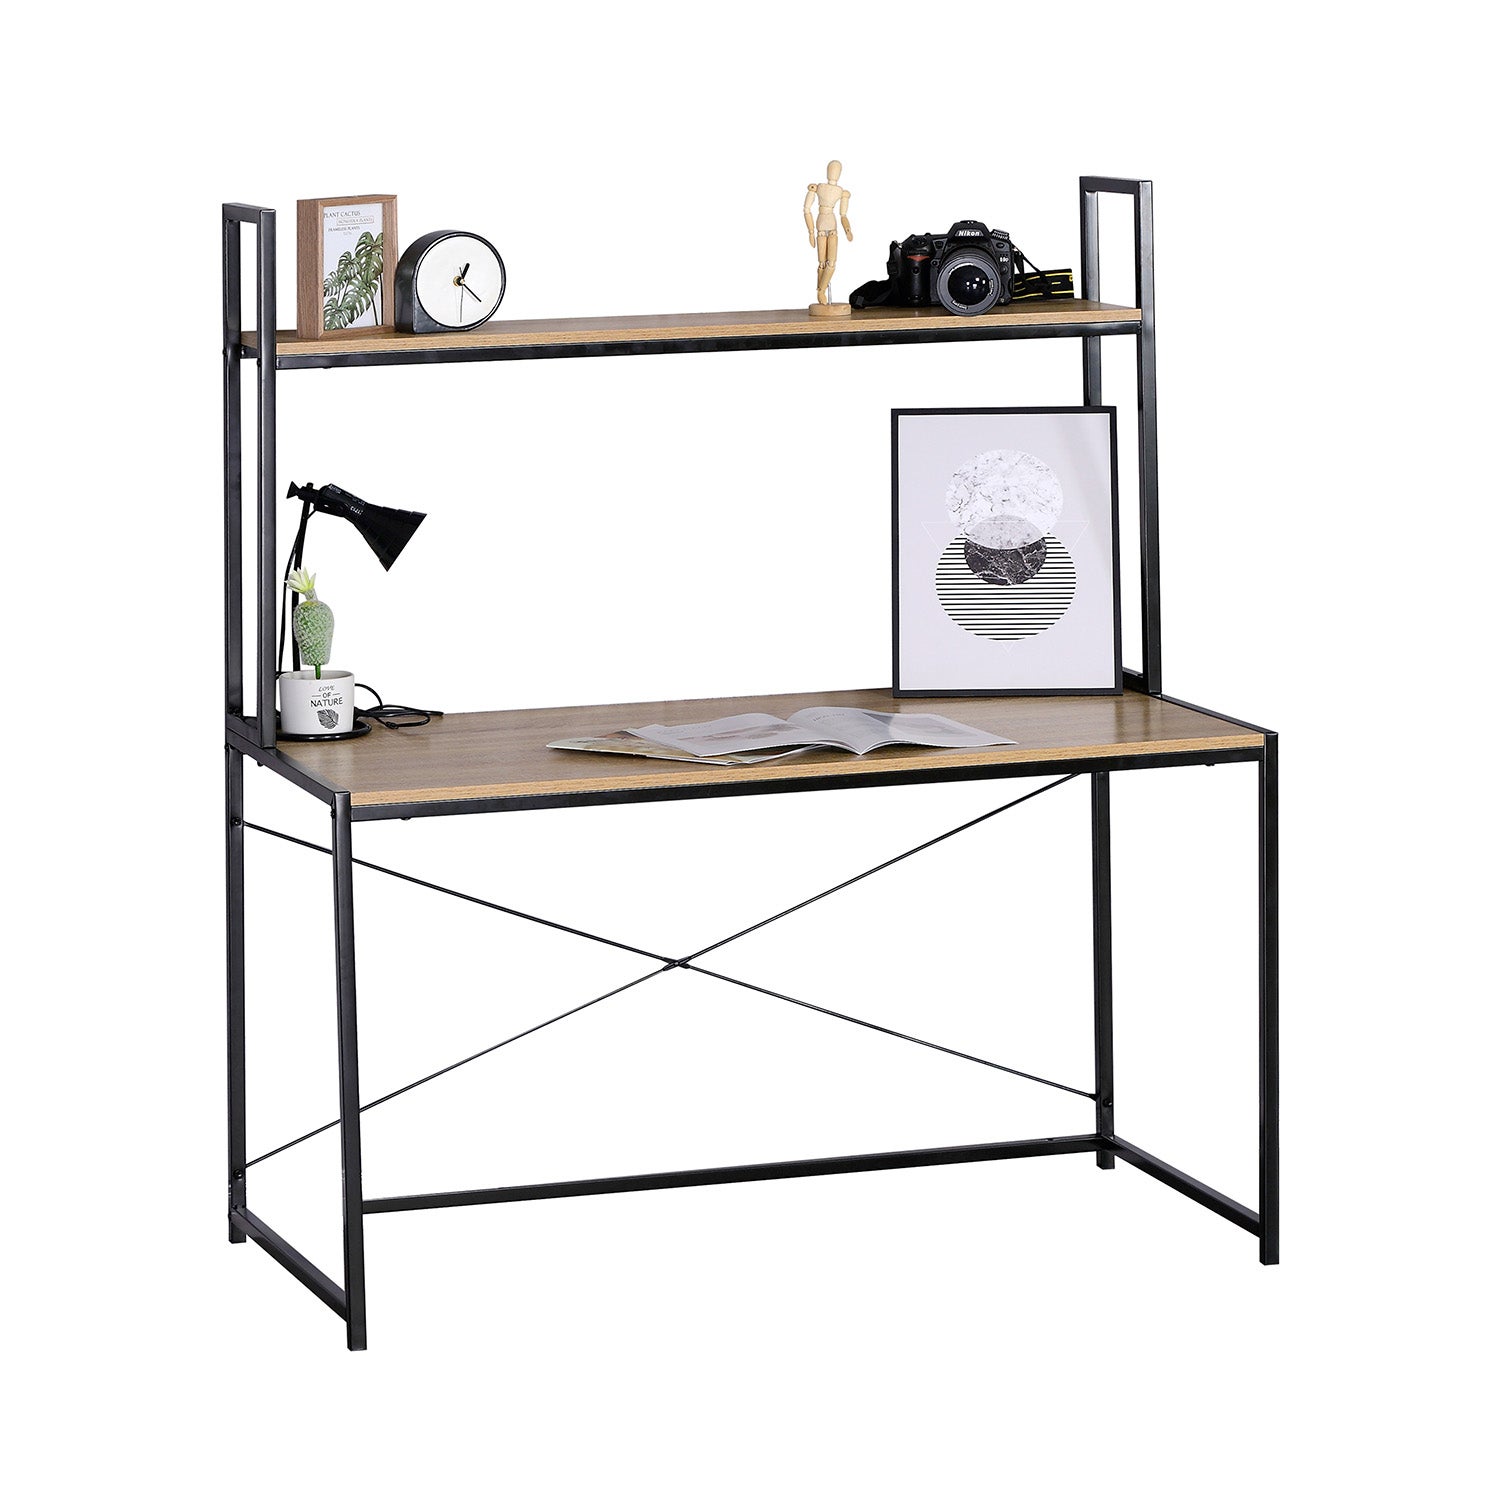 Barthy - scrivania in legno e metallo con ripiano - 120x60x138h cm